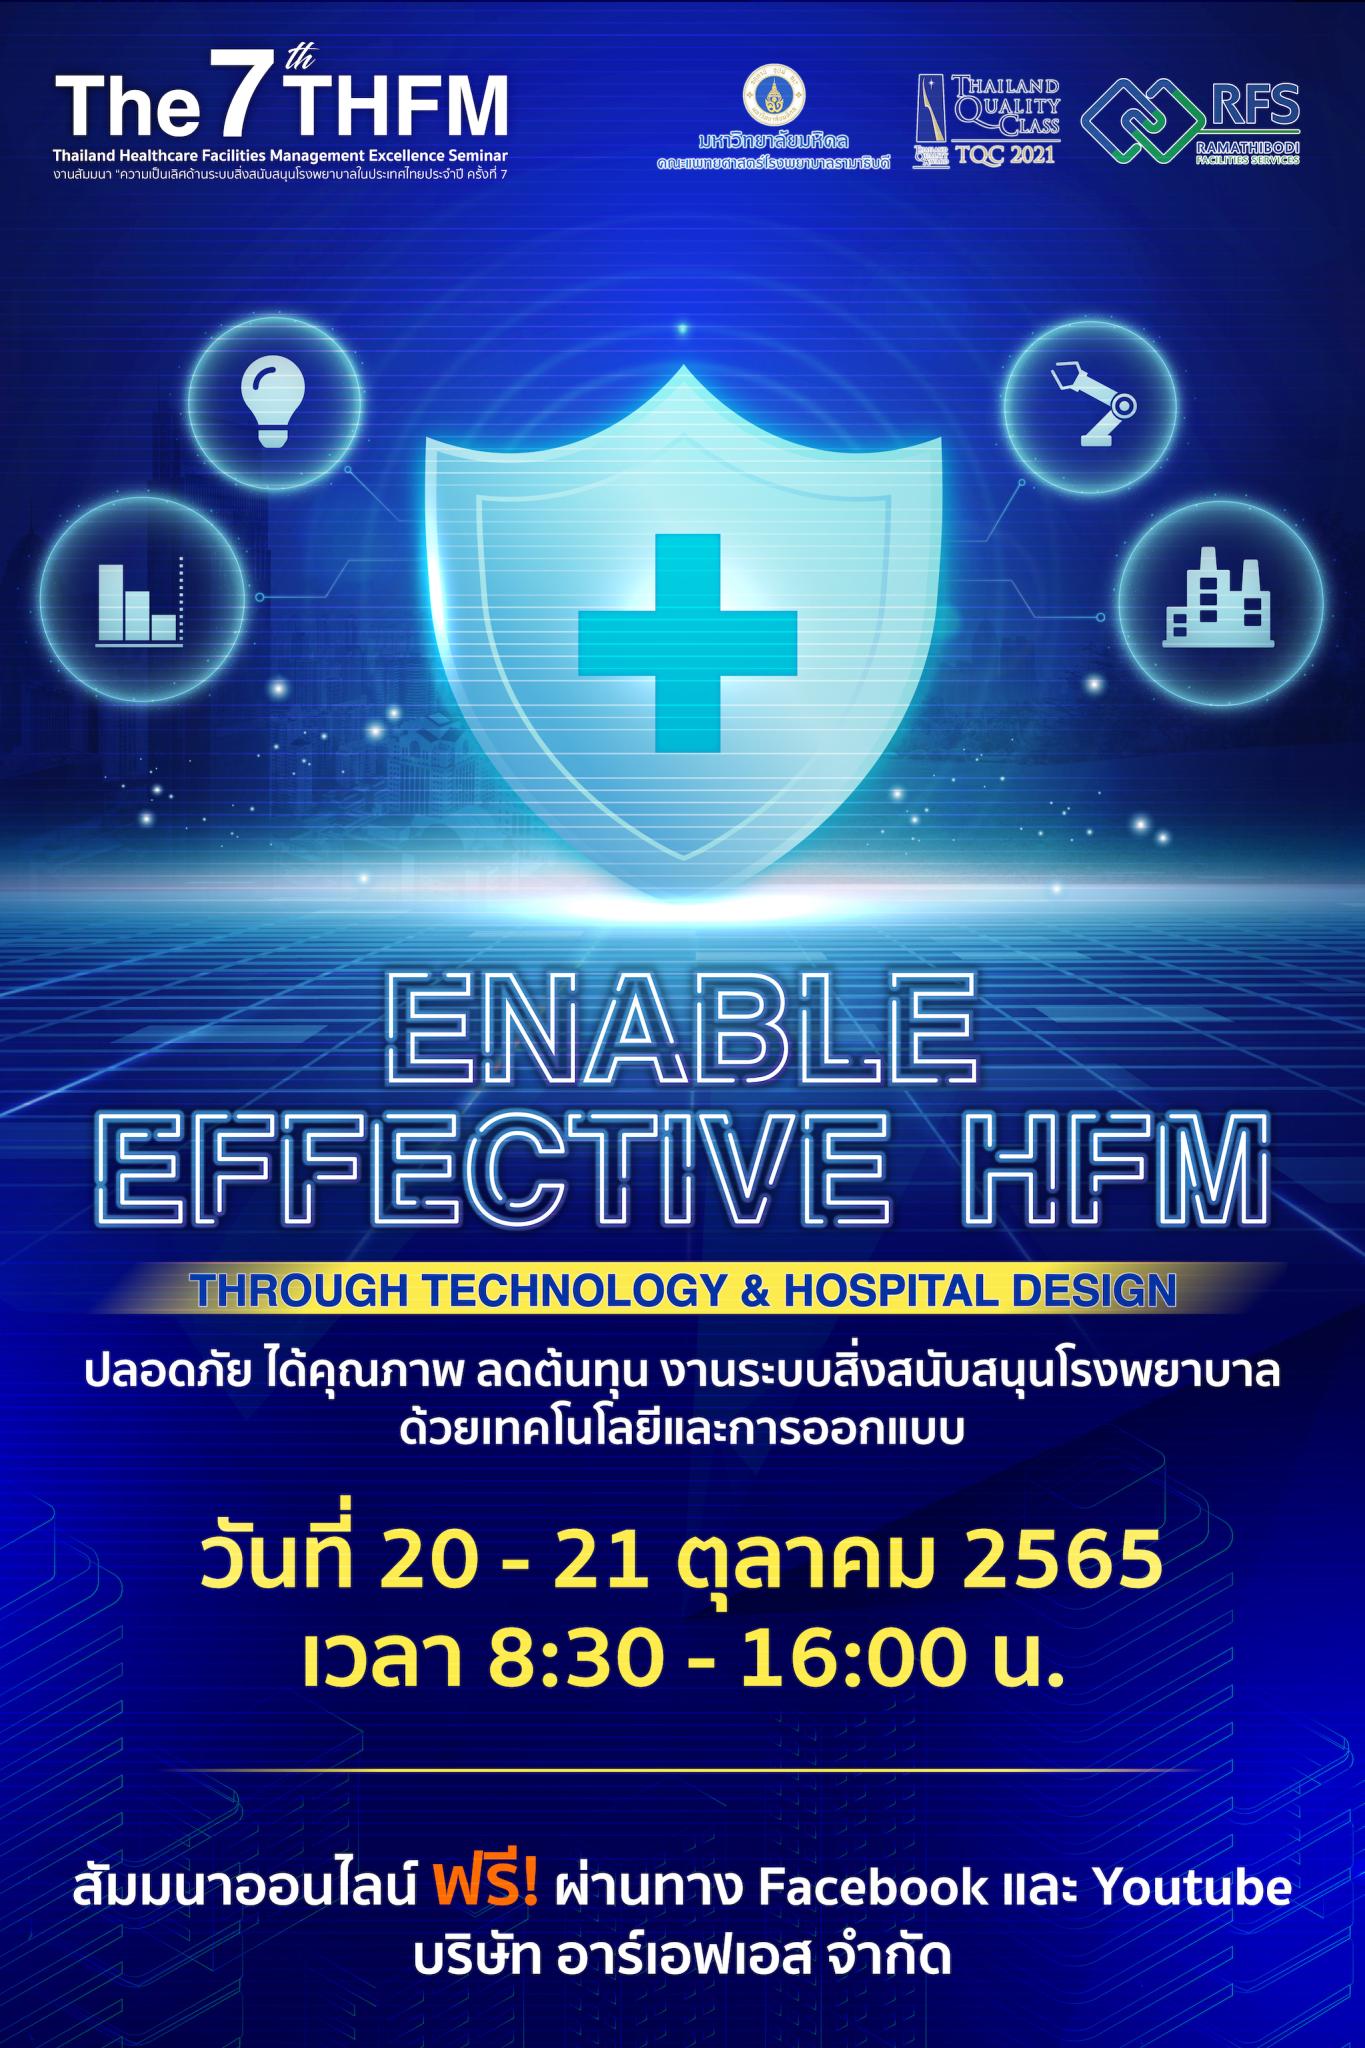 การสัมมนา "ความเป็นเลิศด้านระบบสิ่งสนับสนุนโรงพยาบาลในประเทศไทยประจำปี" ครั้งที่ 7 (The 7th Thailand Healthcare Facilities Management Excellence Seminar)